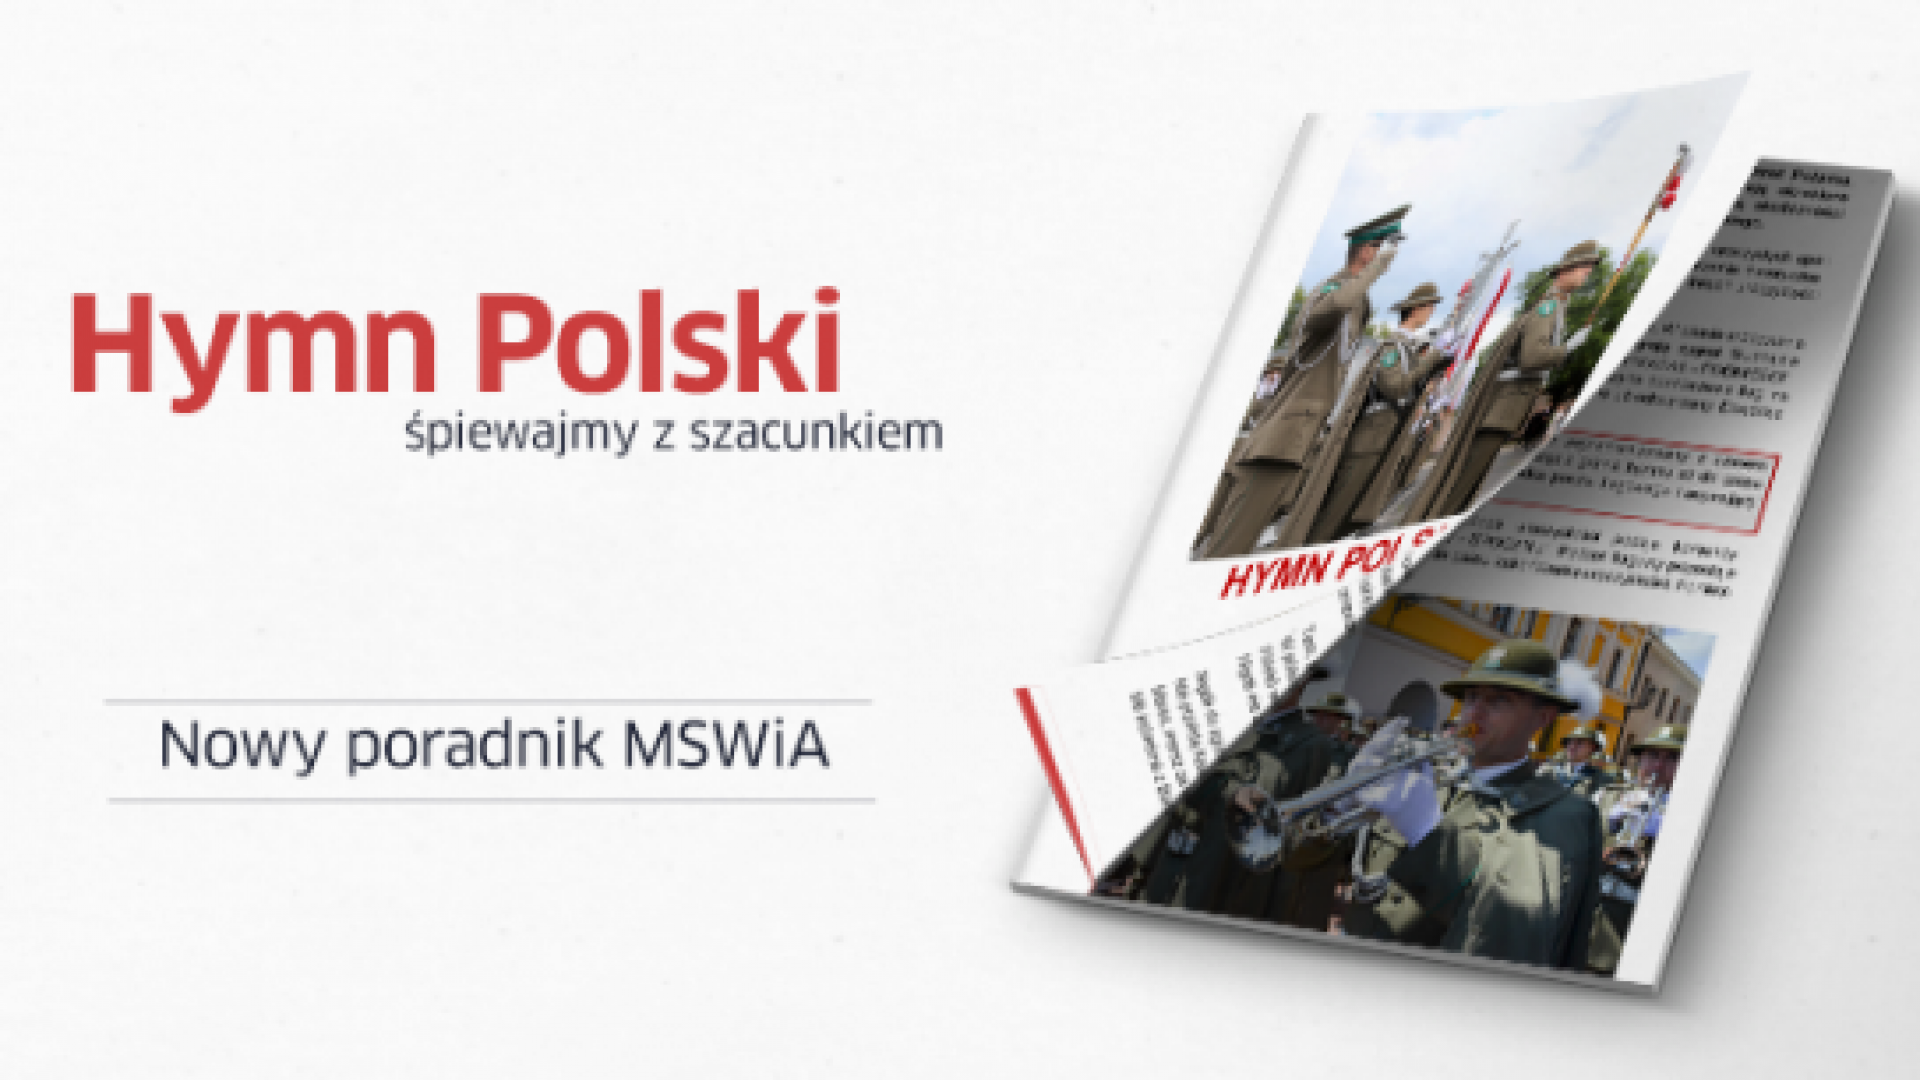 Poradnik MSWiA dotyczący śpewania hymnu Polski Polskie Radio Koszalin